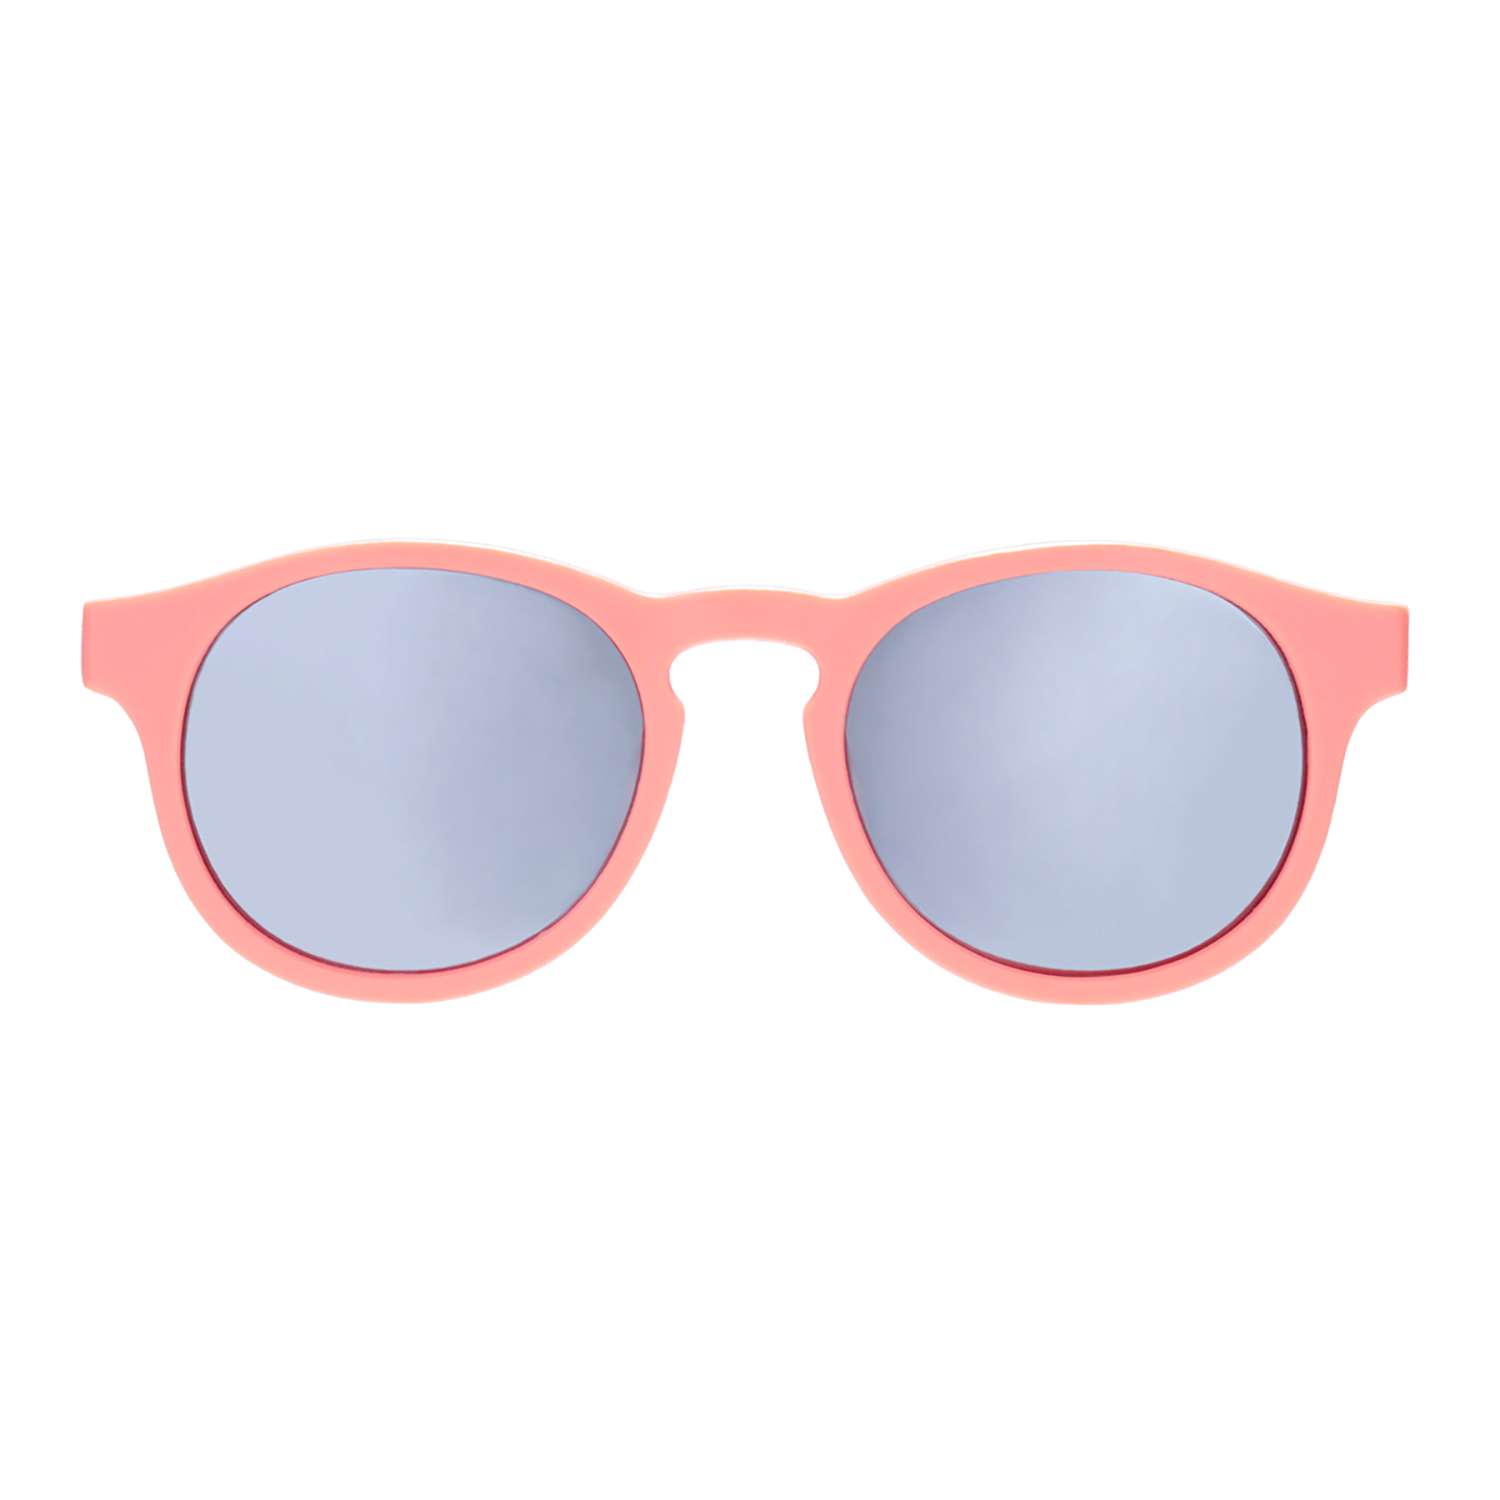 Солнцезащитные очки Babiators Blue Series Keyhole Polarized Уезжаю на выходные 0-2 BLU-007 - фото 8